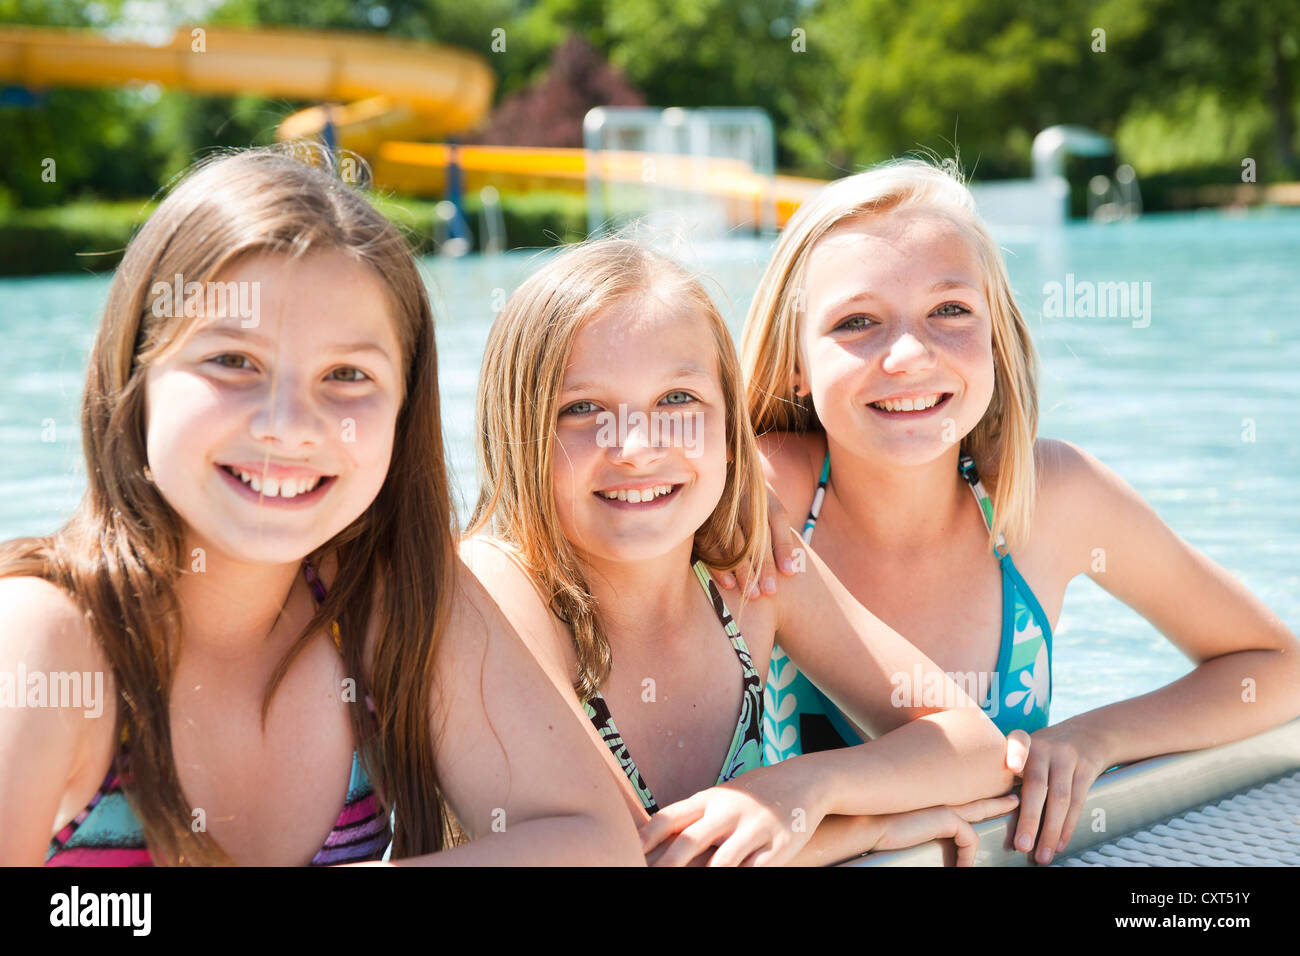 Gruppe Von Mädchen Am Rande Ein öffentliches Schwimmbad Stockfotografie Alamy